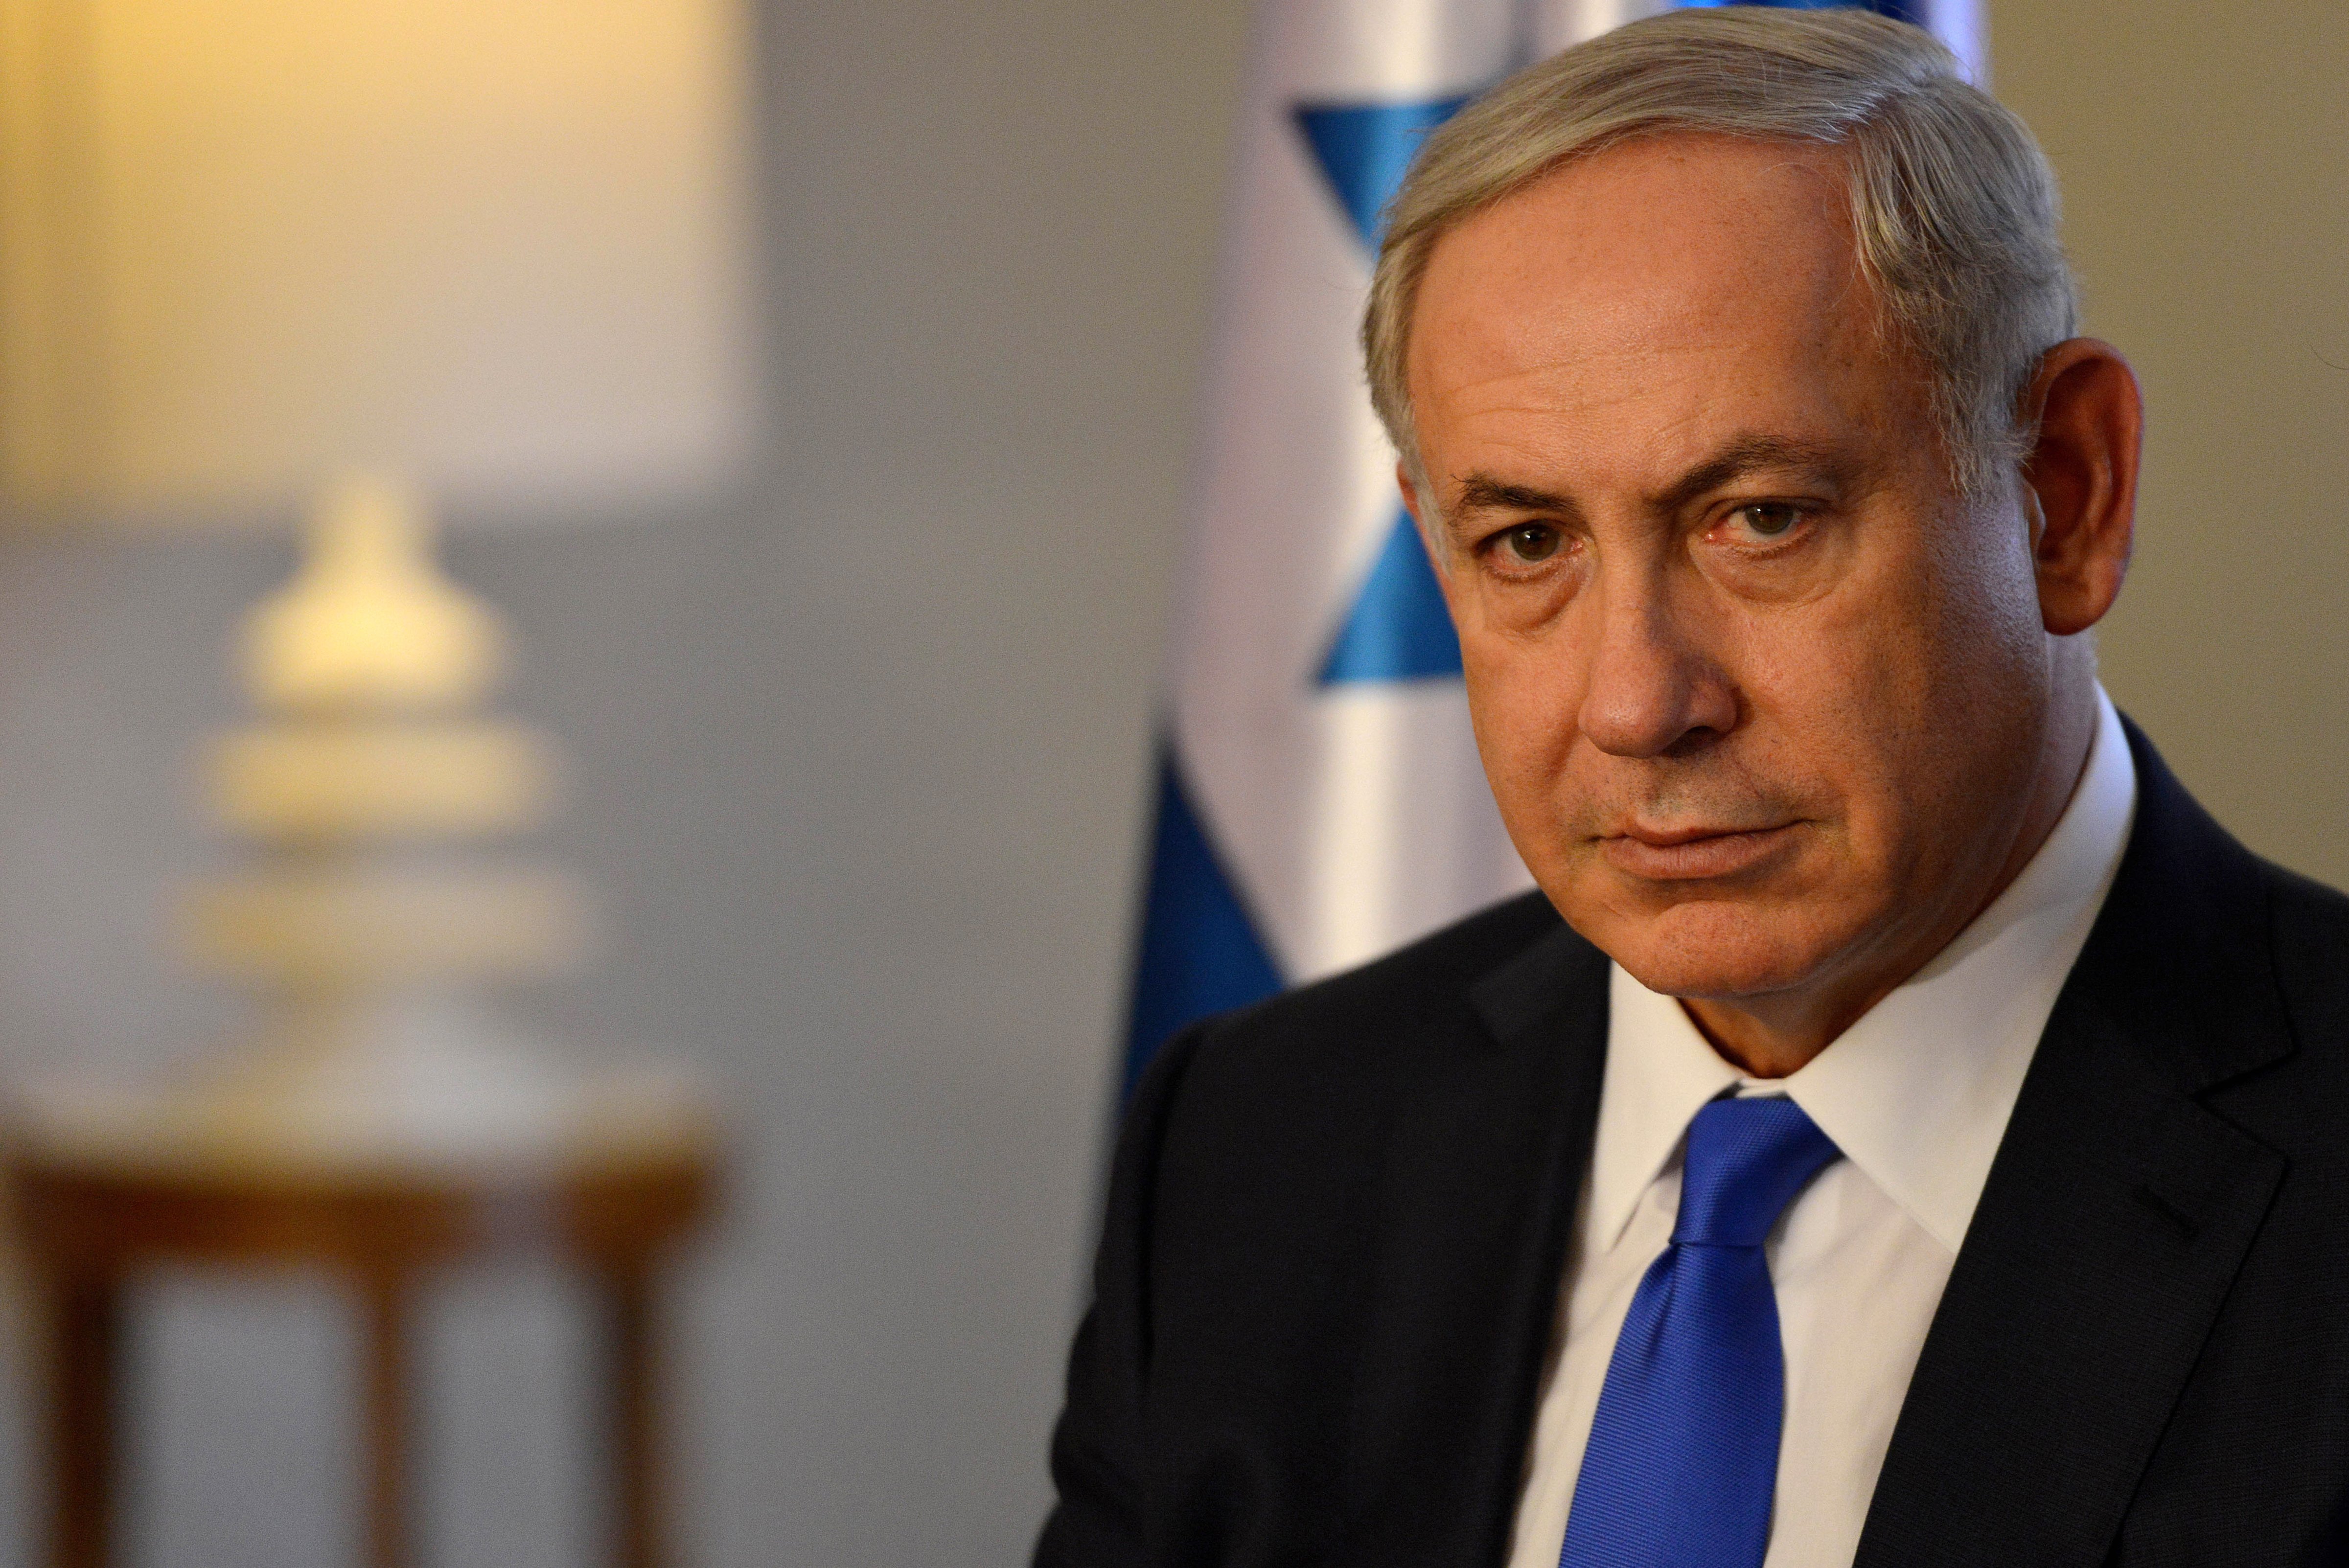 Israeli Prime Minister Benjamin Netanyahu is seen prior to bilateral talks